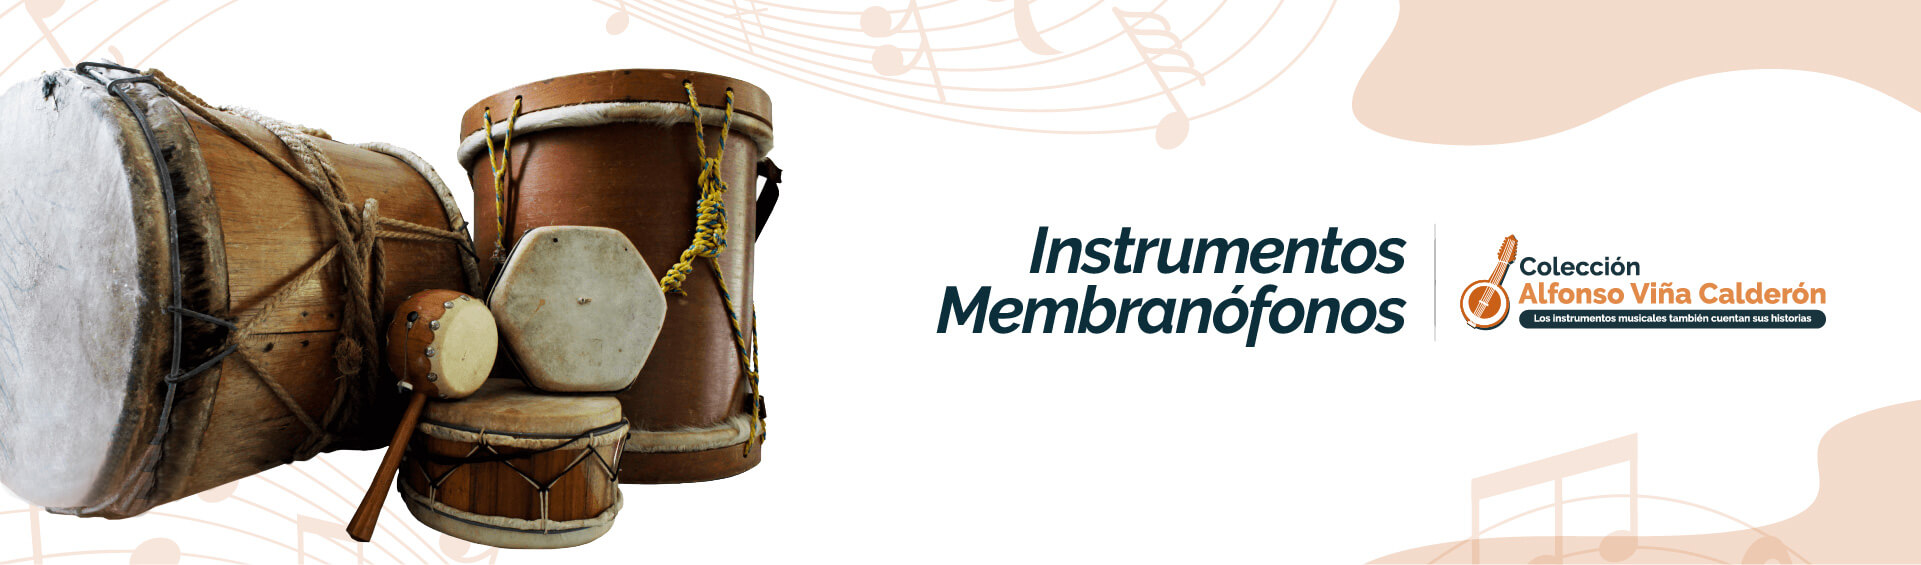 banner de la página instrumentos Membranófonos del museo Alfonso Viña